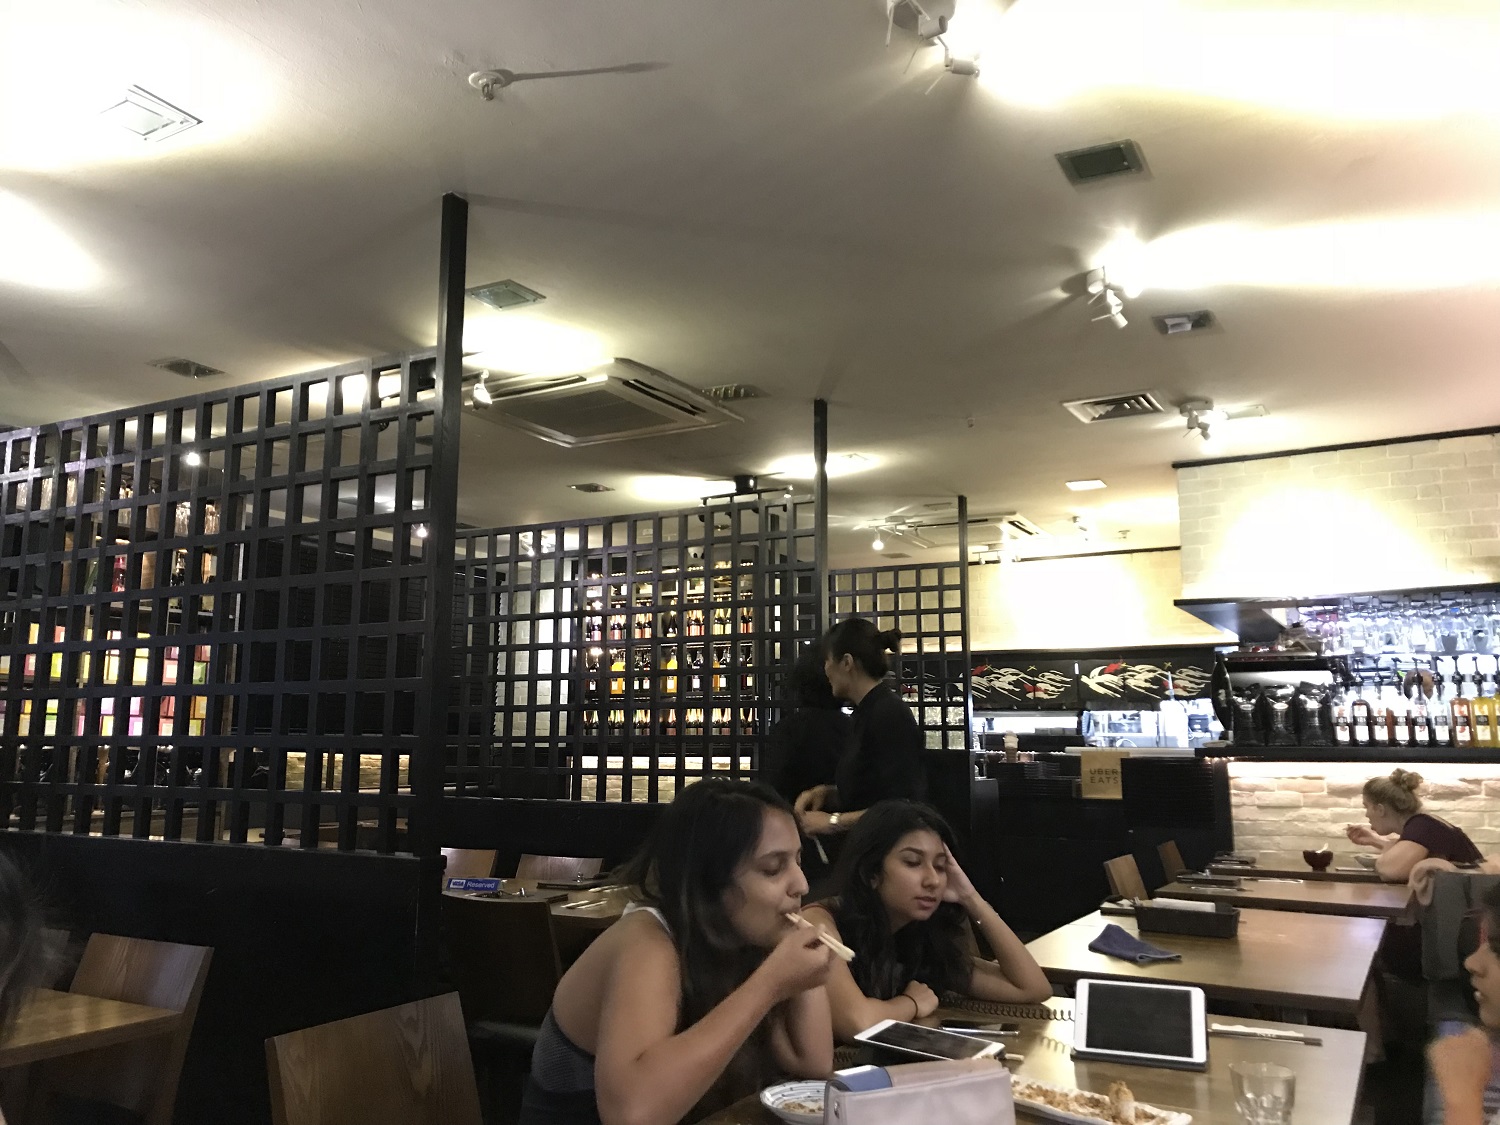 हर्बिव्होर जपानी शाकाहारी रेस्टॉरंट सिंगापूर